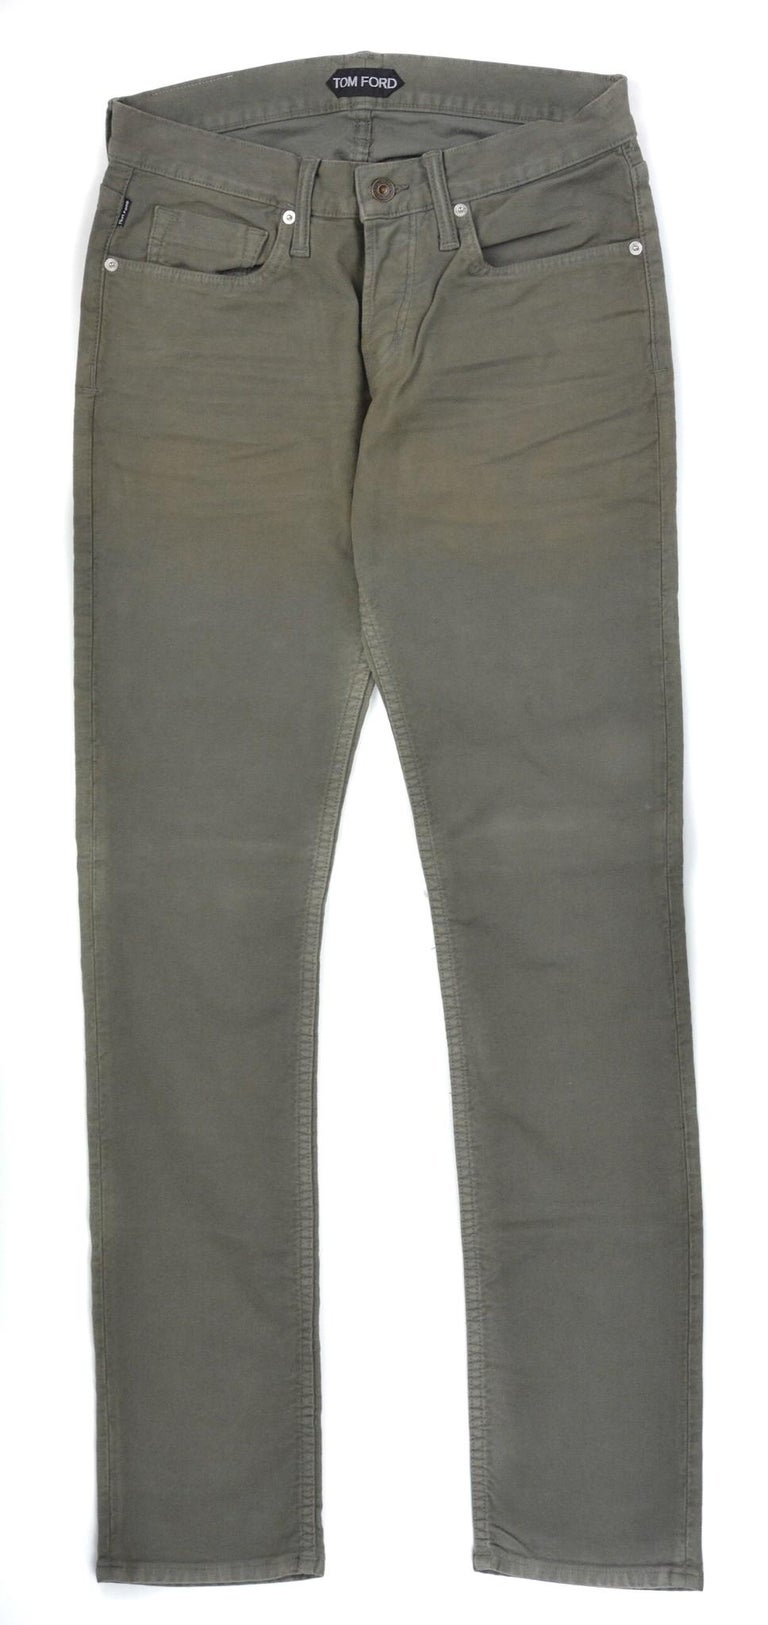 Tom Ford Men's Light Olive Green Cotton Slim Jeans For Sale at 1stdibs